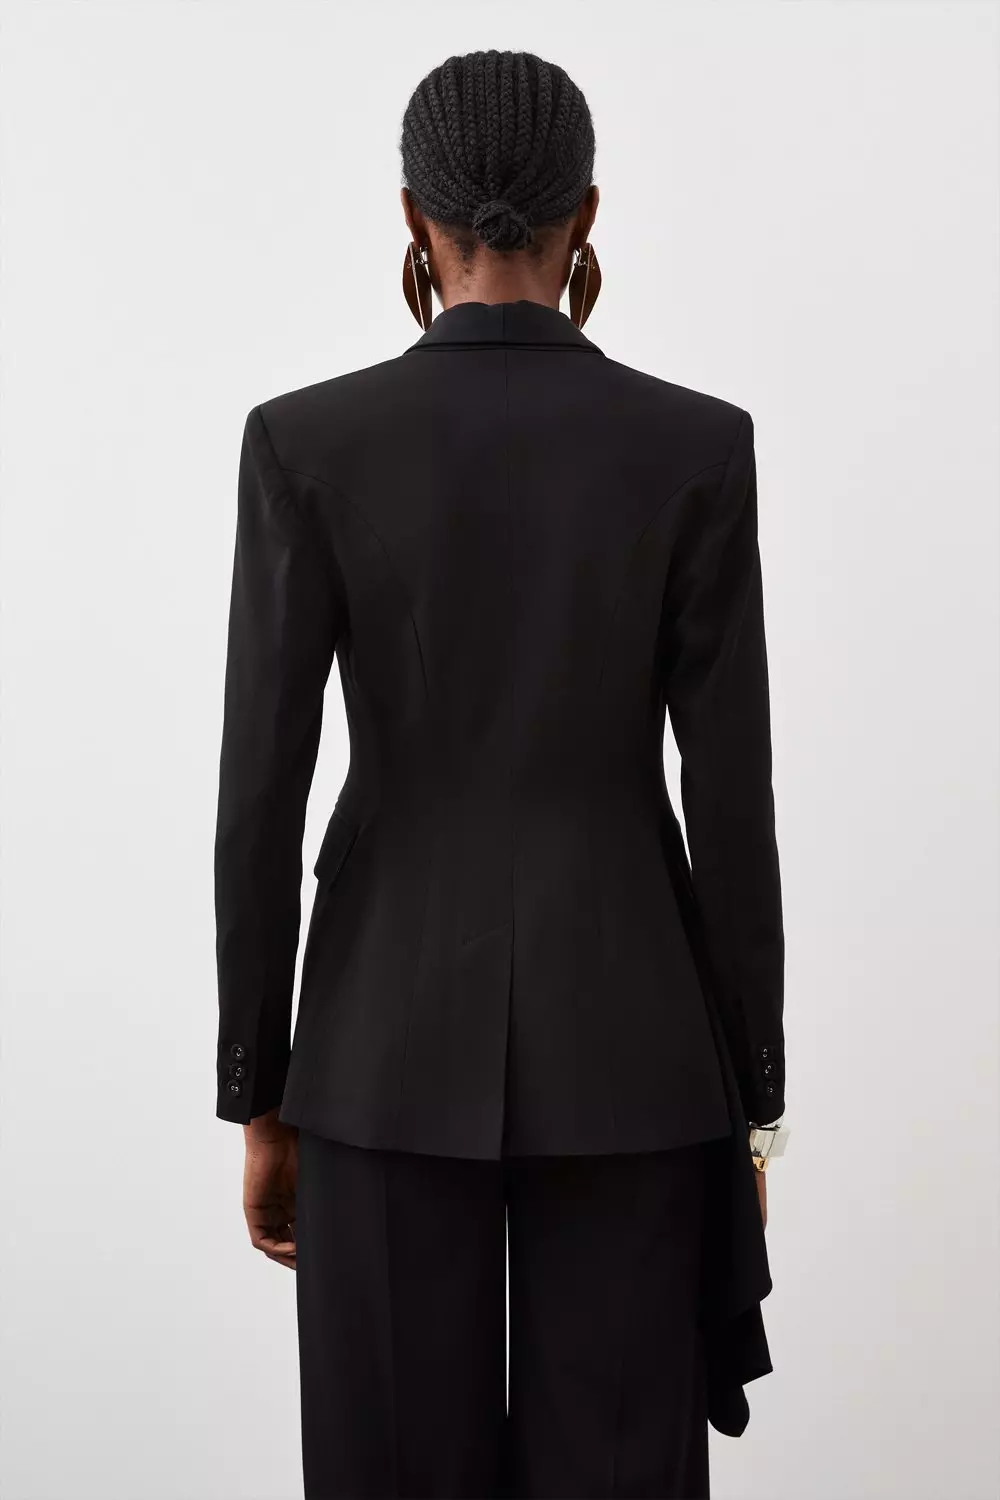 Polished Viscose Drape Side Single Breasted Tailored Jacket | Karen Millen